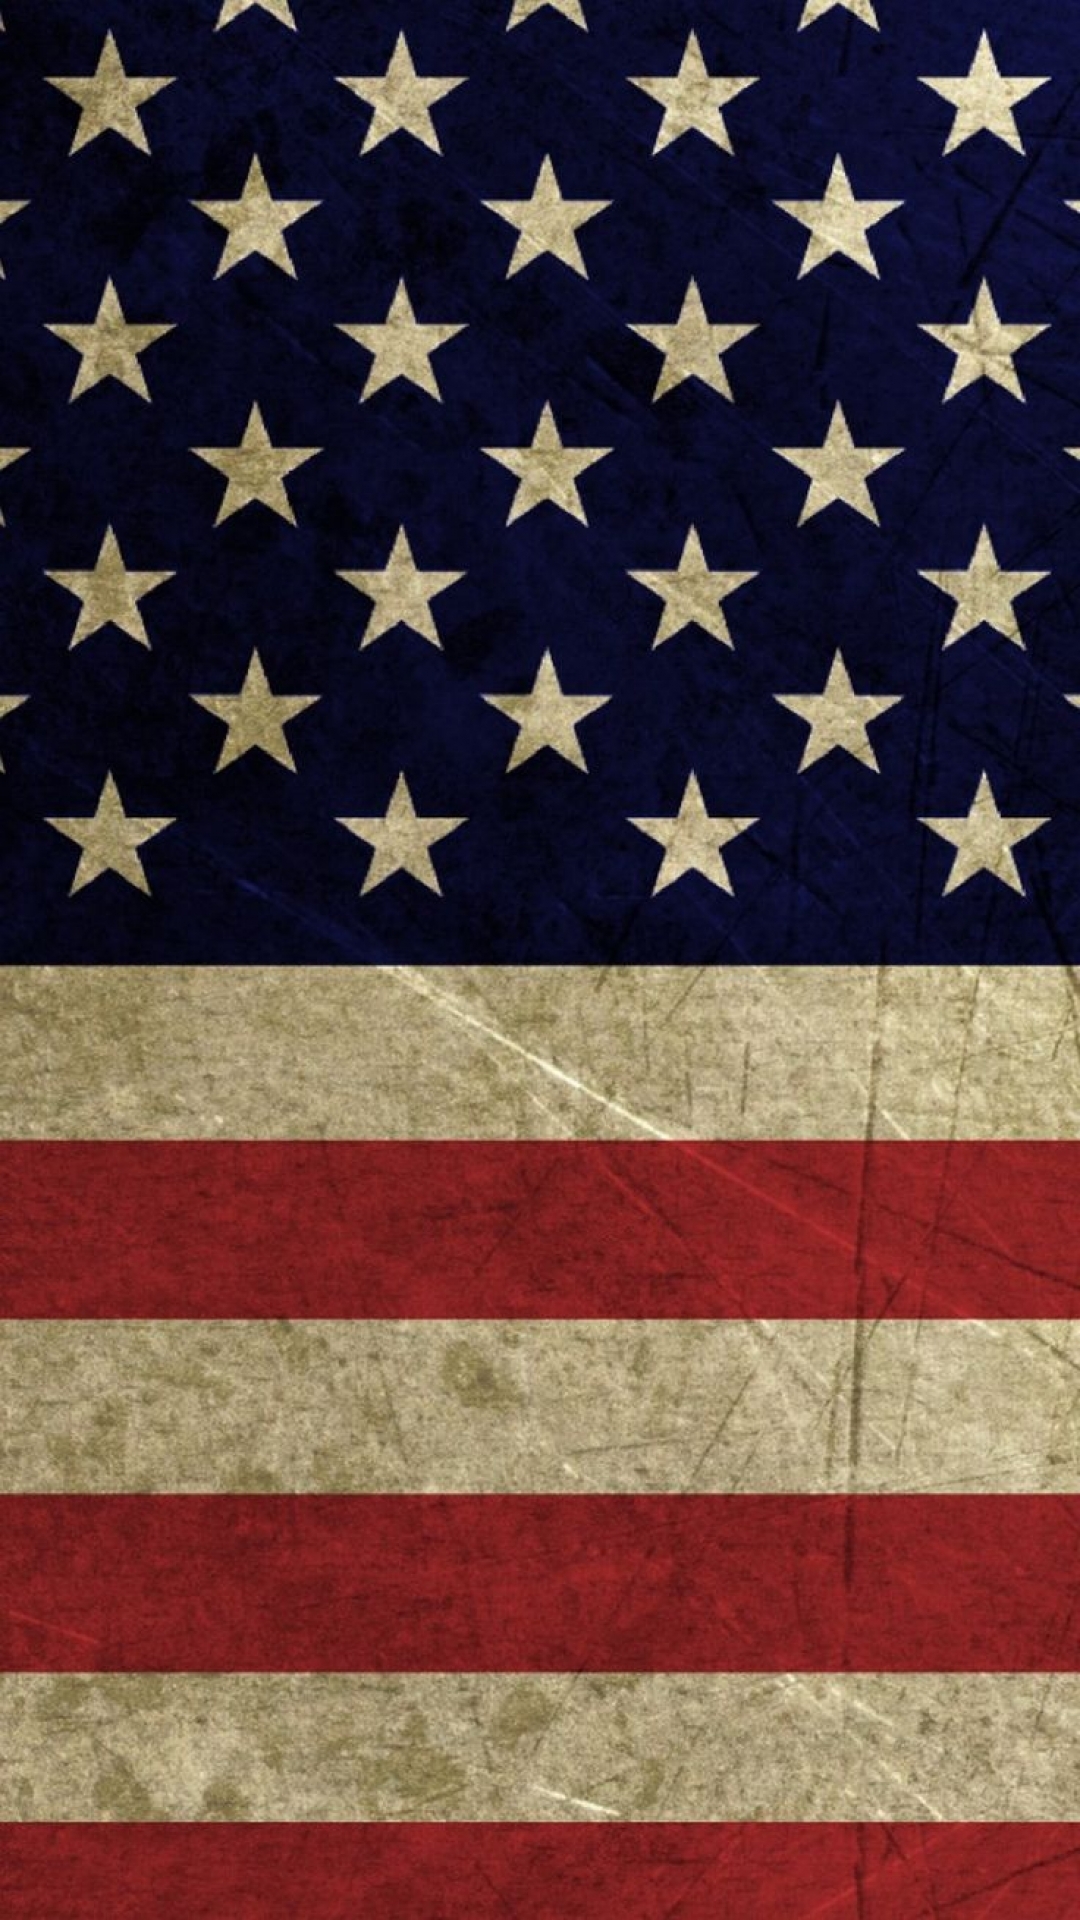 American Flag Background Images | PixelsTalk.Net